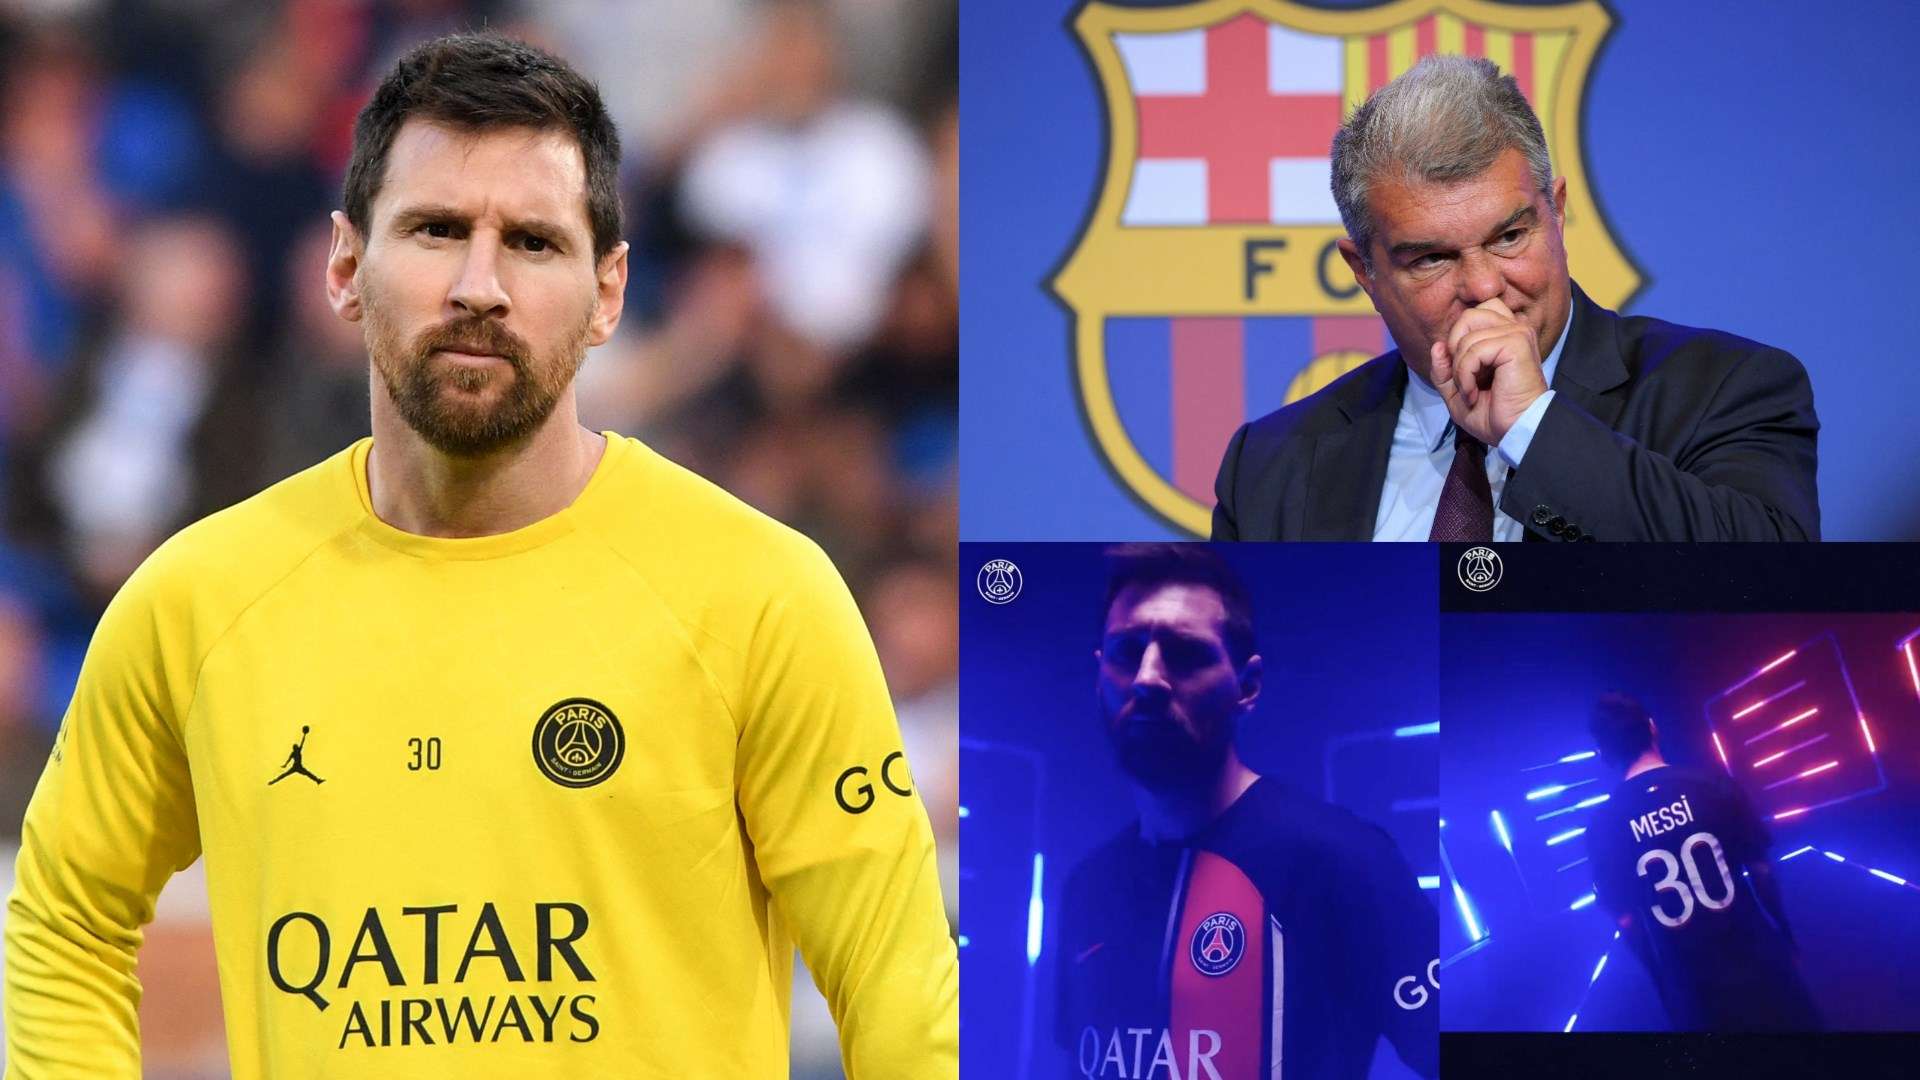 Lionel Messi PSG kit promo video Joan Laporta split